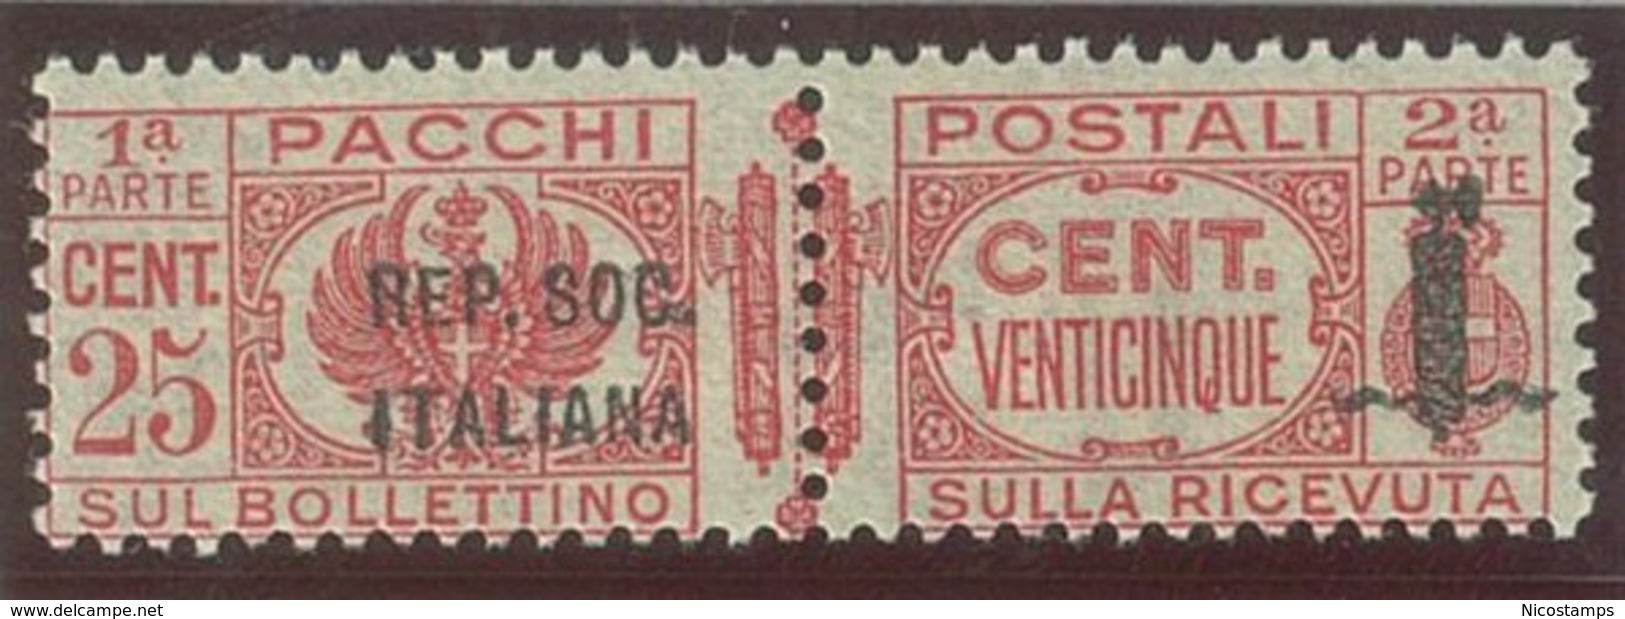 ITALIA REPUBBLICA SOCIALE ITALIANA (R.S.I.) SASS. P.P. 38a  NUOVO - Colis-postaux